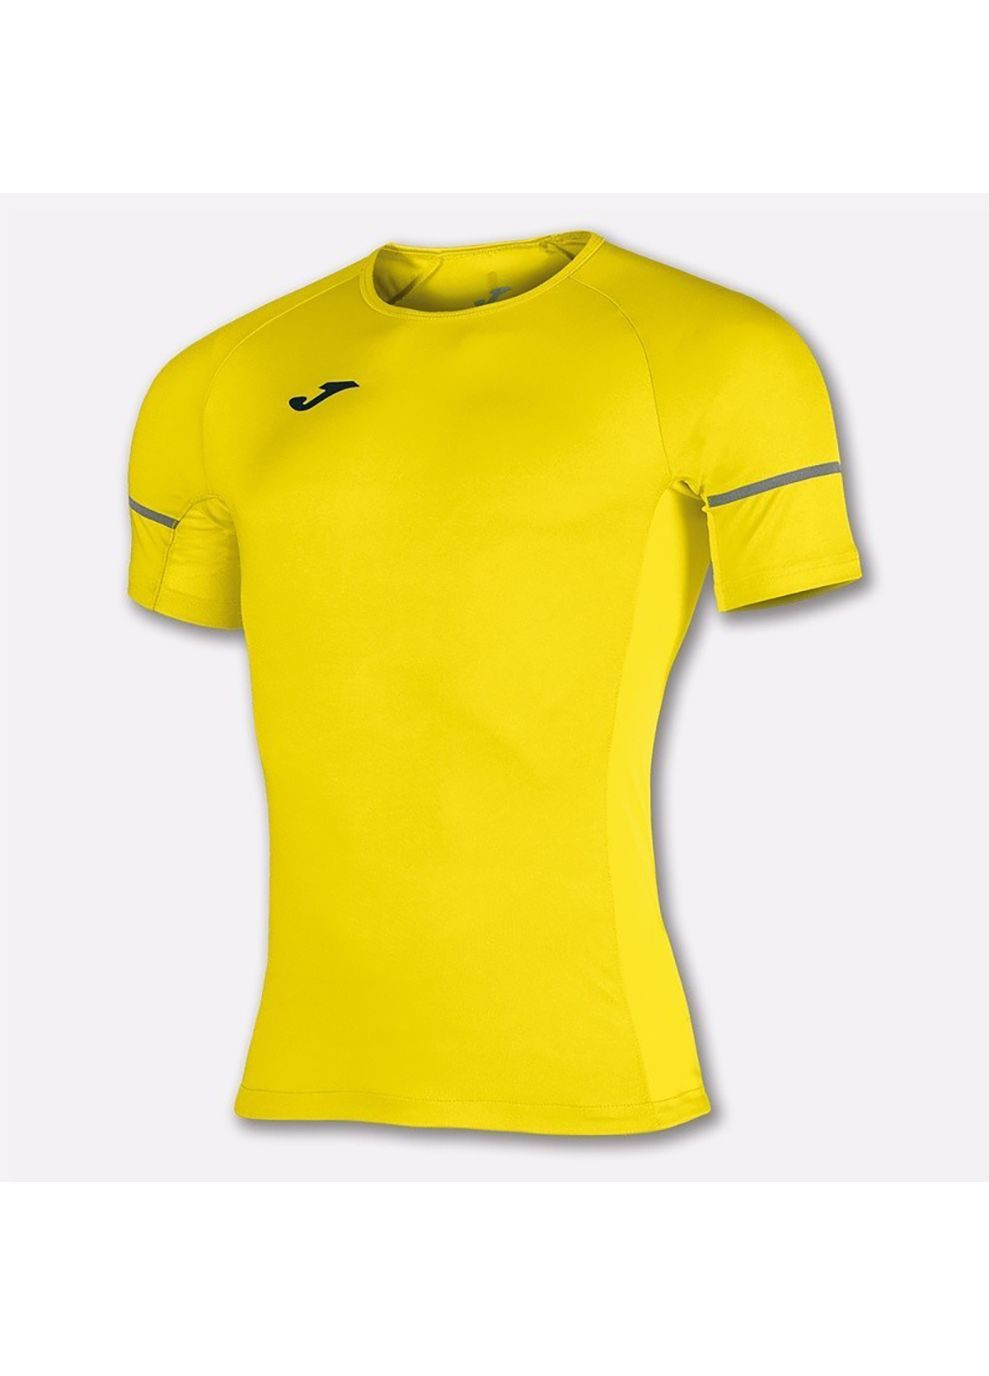 Желтая мужская футболка race желтый-xl Joma